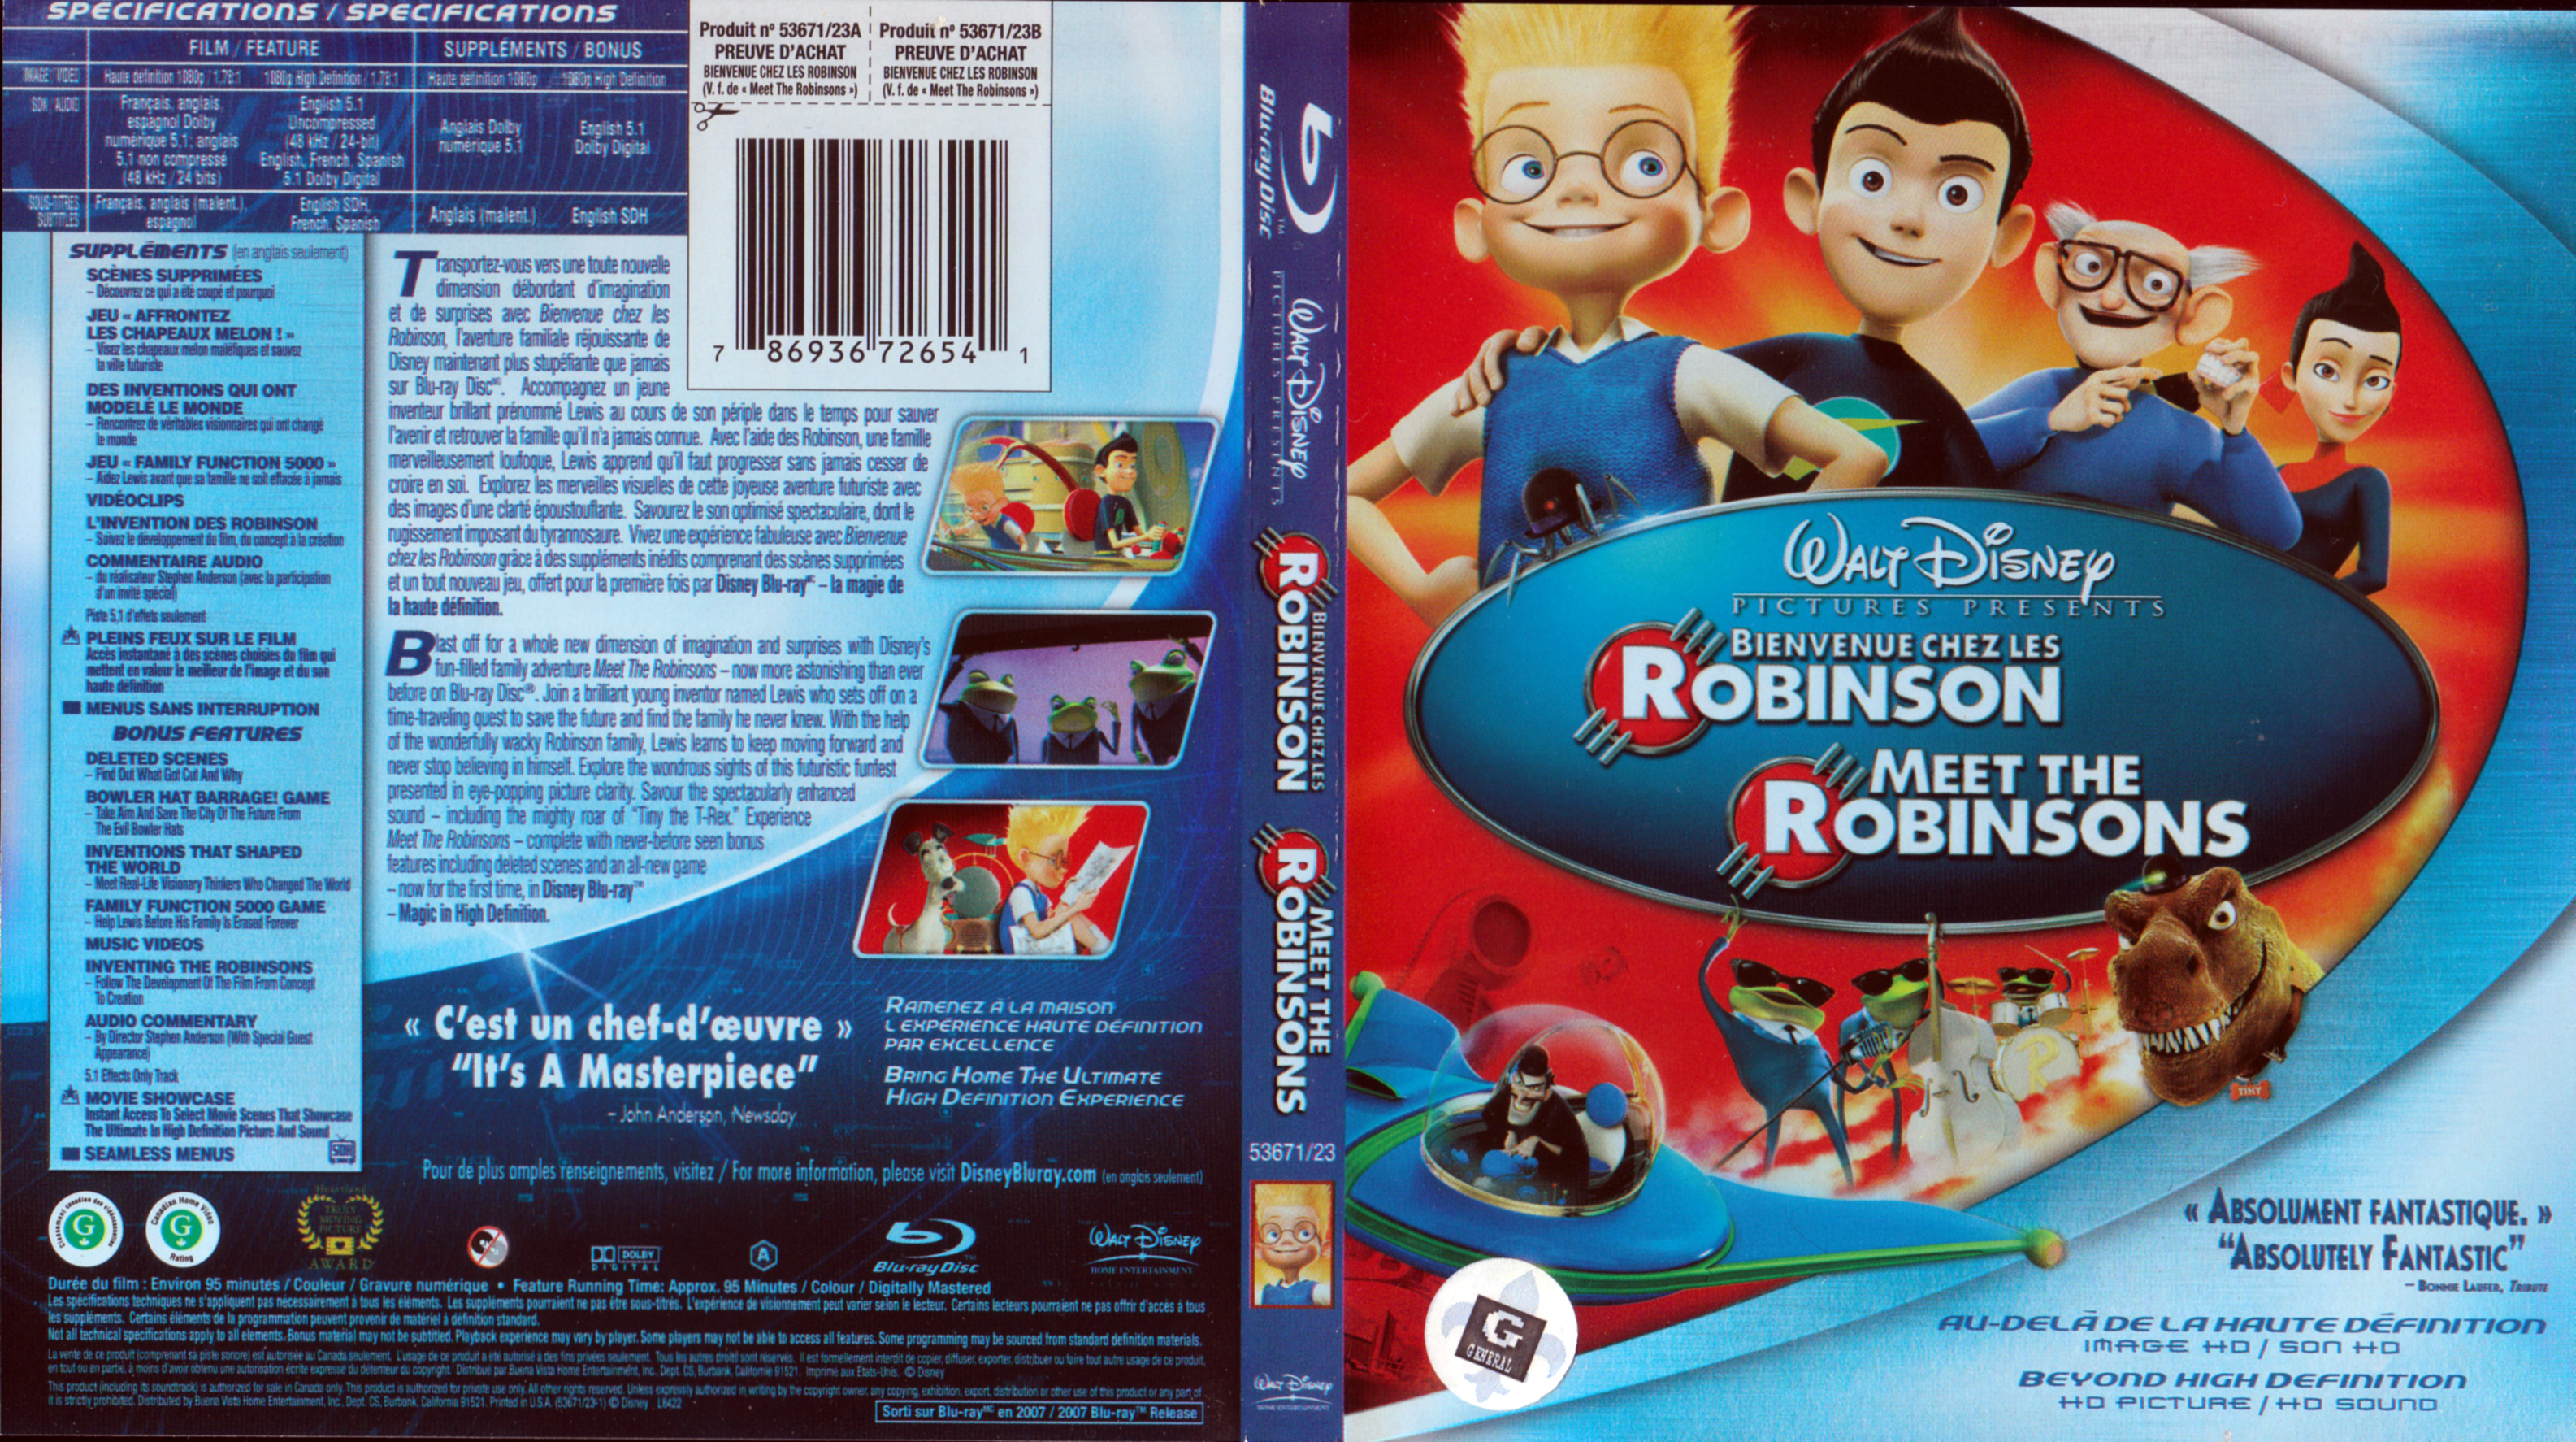 Jaquette DVD Bienvenue chez les Robinson (BLU-RAY) (Canadienne)